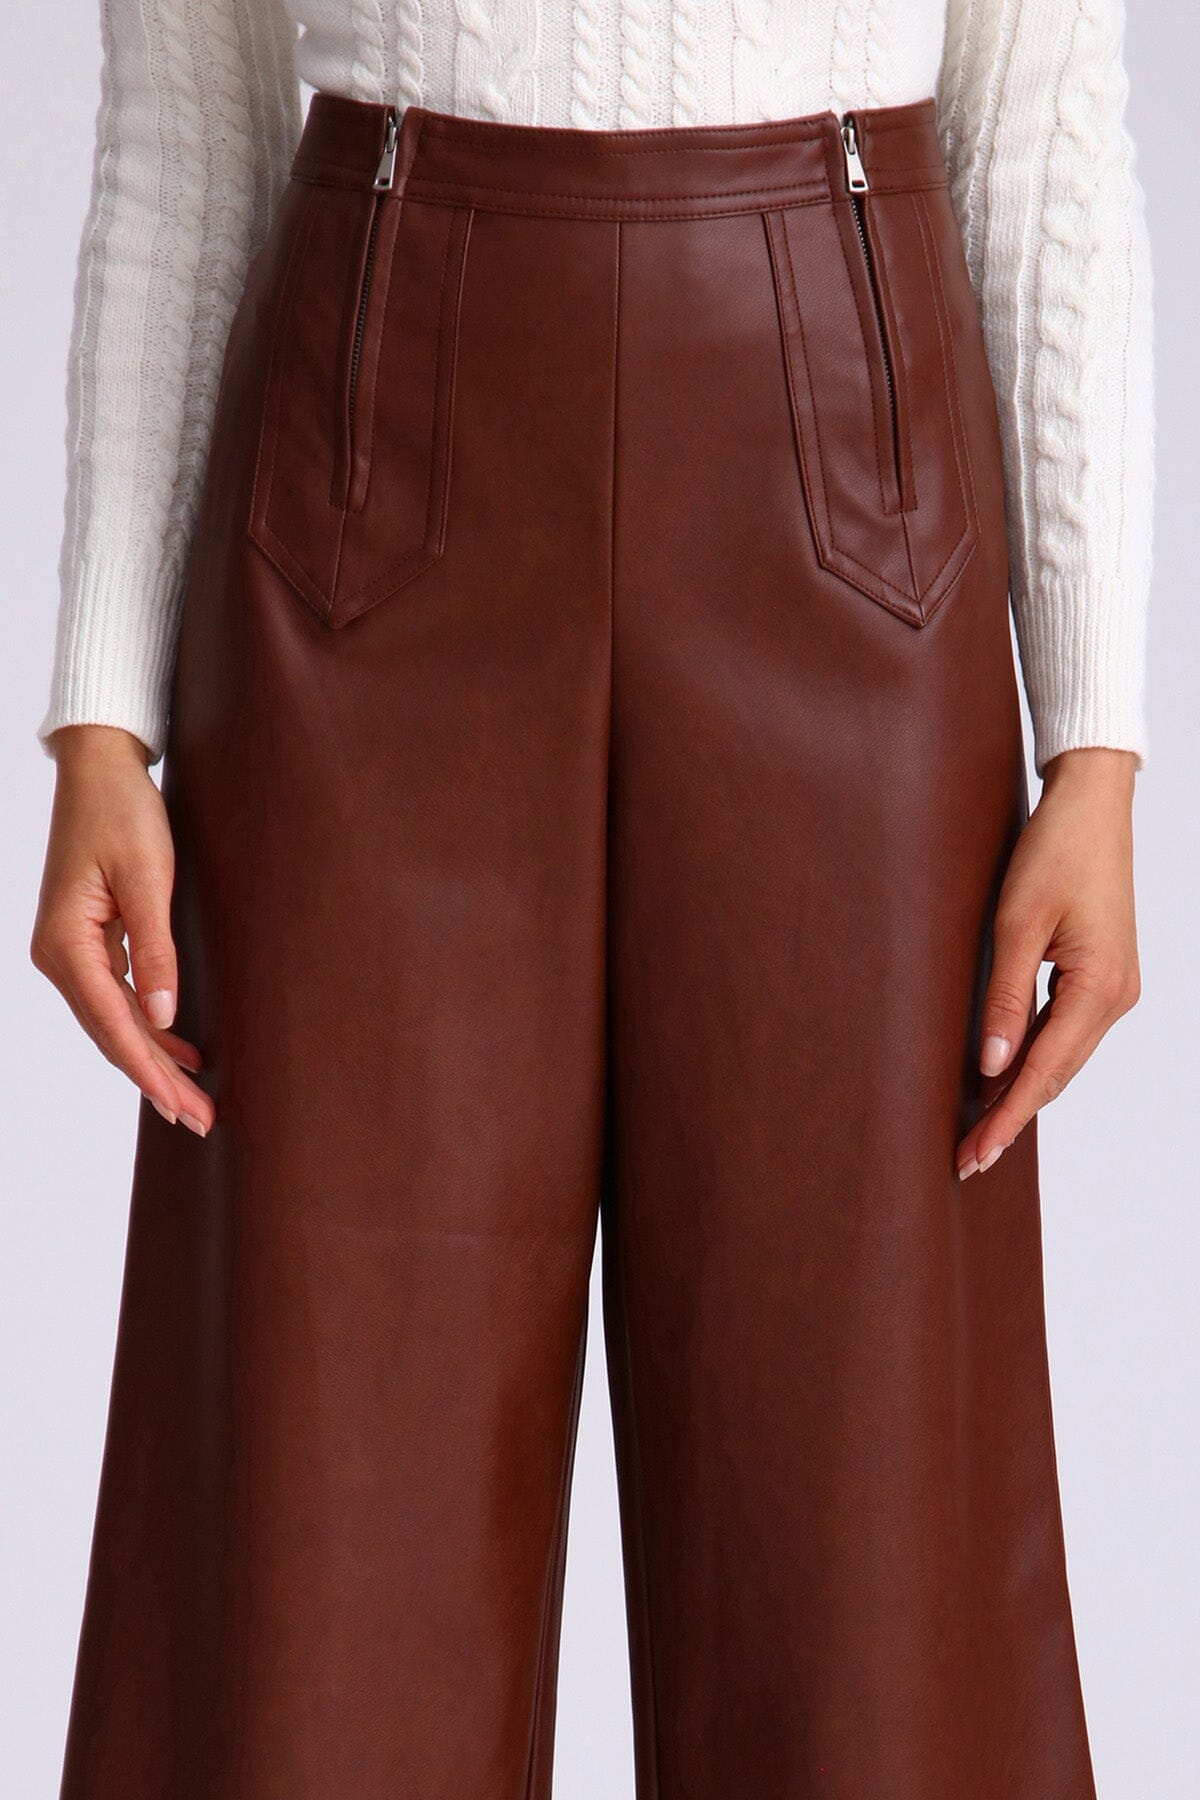 Brown Double Zip Faux Leather Cropped Culotte Pants by Avec Les Filles